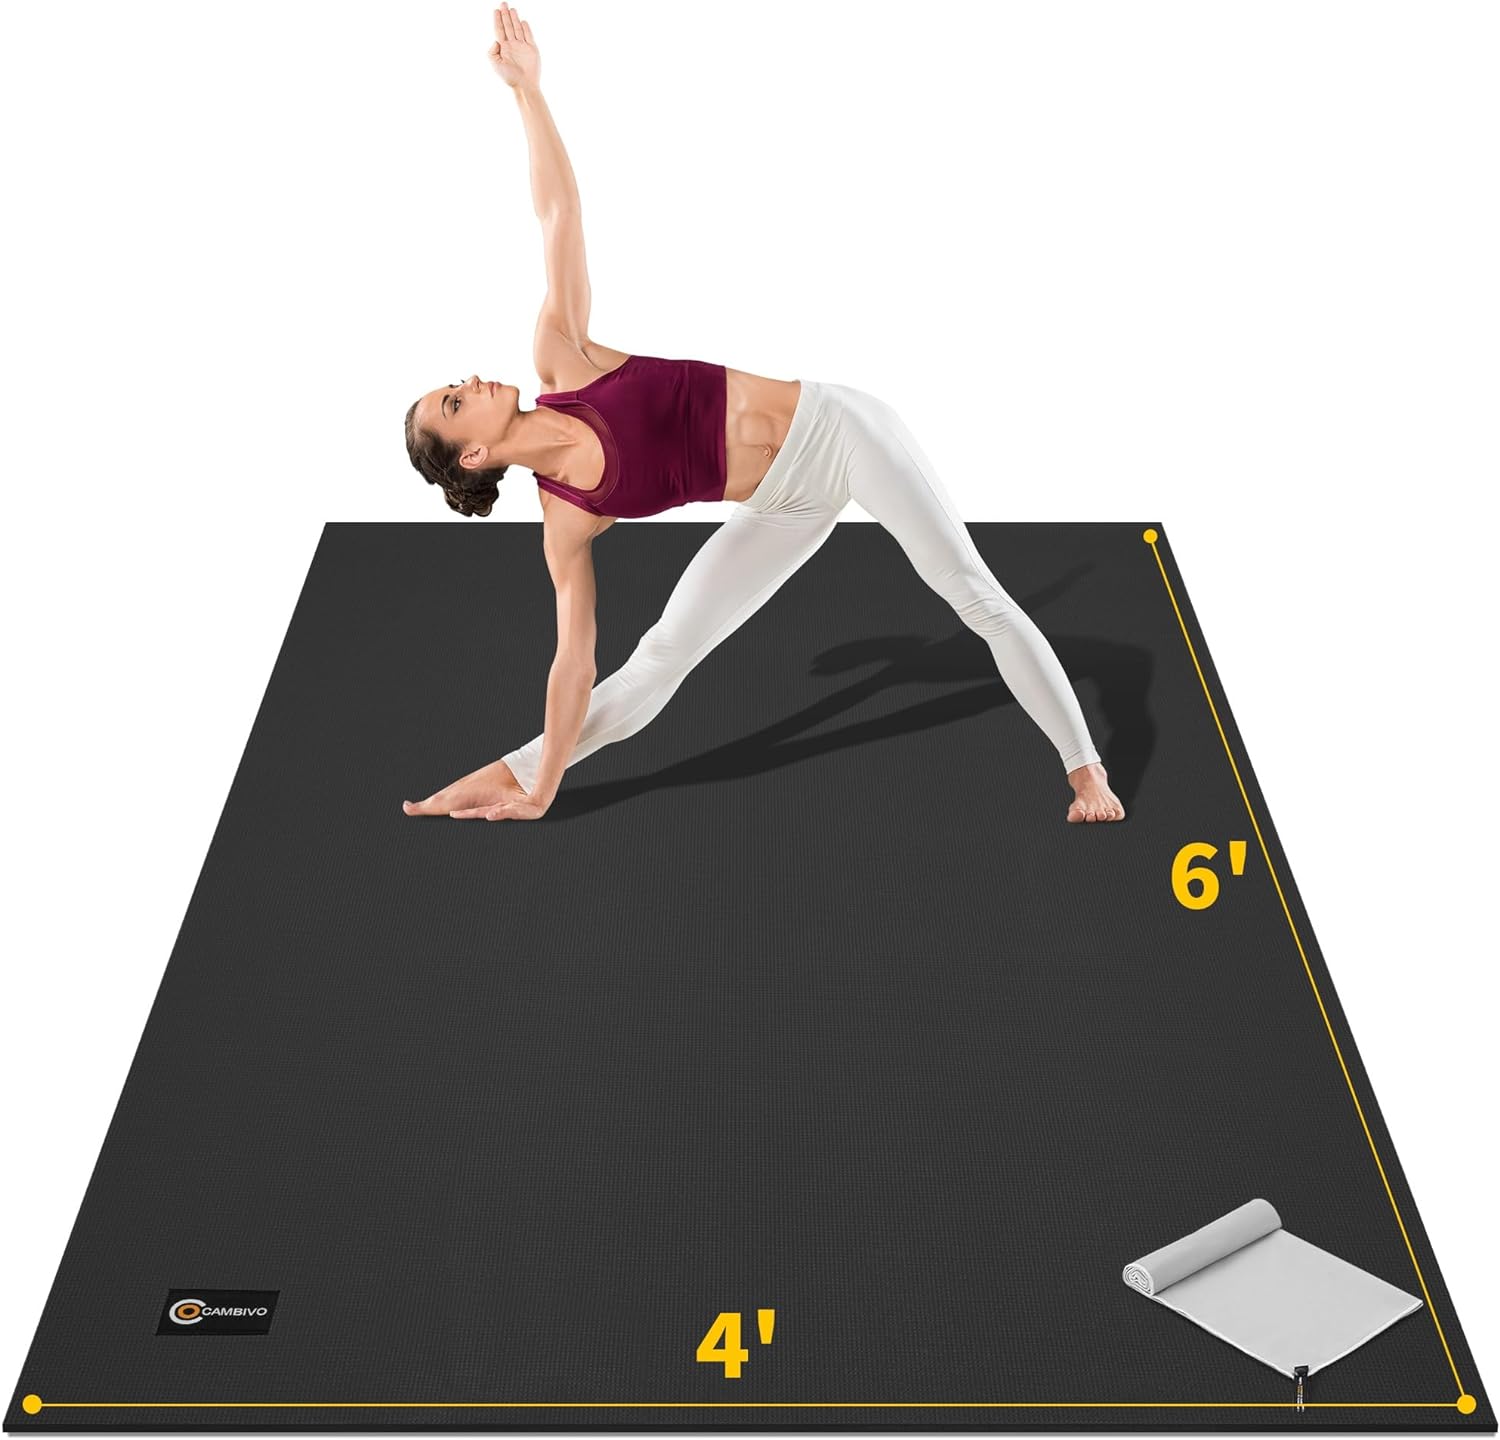 Gogokiwi Large Yoga Mat (6'x4') Extra Wide 1/4 Thick Workout Blush Pink